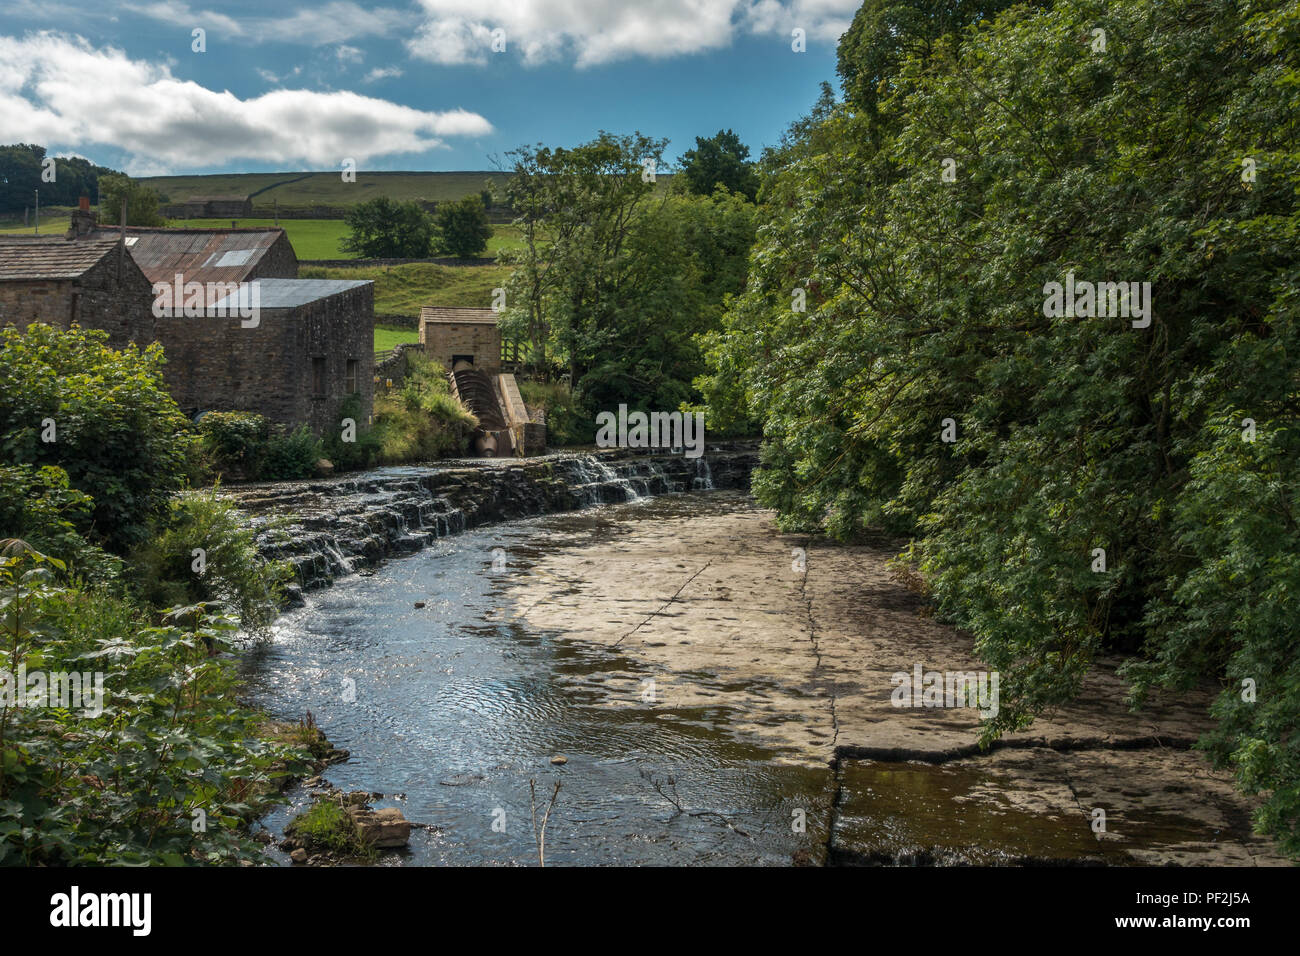 Fluss Bain Hydro, eine Gemeinschaft im Besitz schraube Turbine, die meisten der 40 Eigenschaften in das Dorf von Bainbridge, North Yorkshire, mit Selbstbeteiligung electri Stockfoto